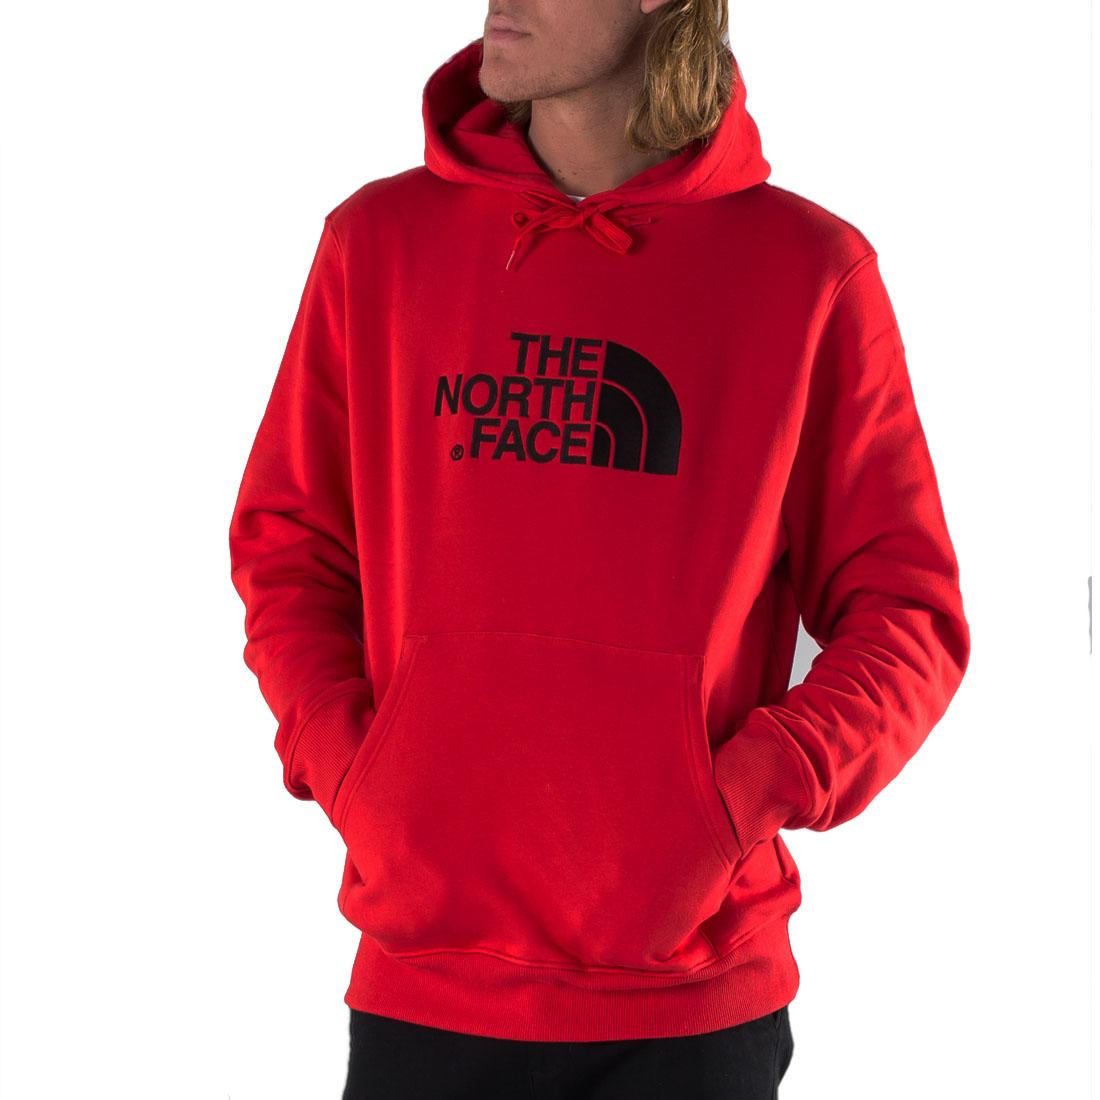 The North Face Mens Drew pico media cúpula Sudadera Con Capucha Suéter Rojo  Clásico Bordado | eBay